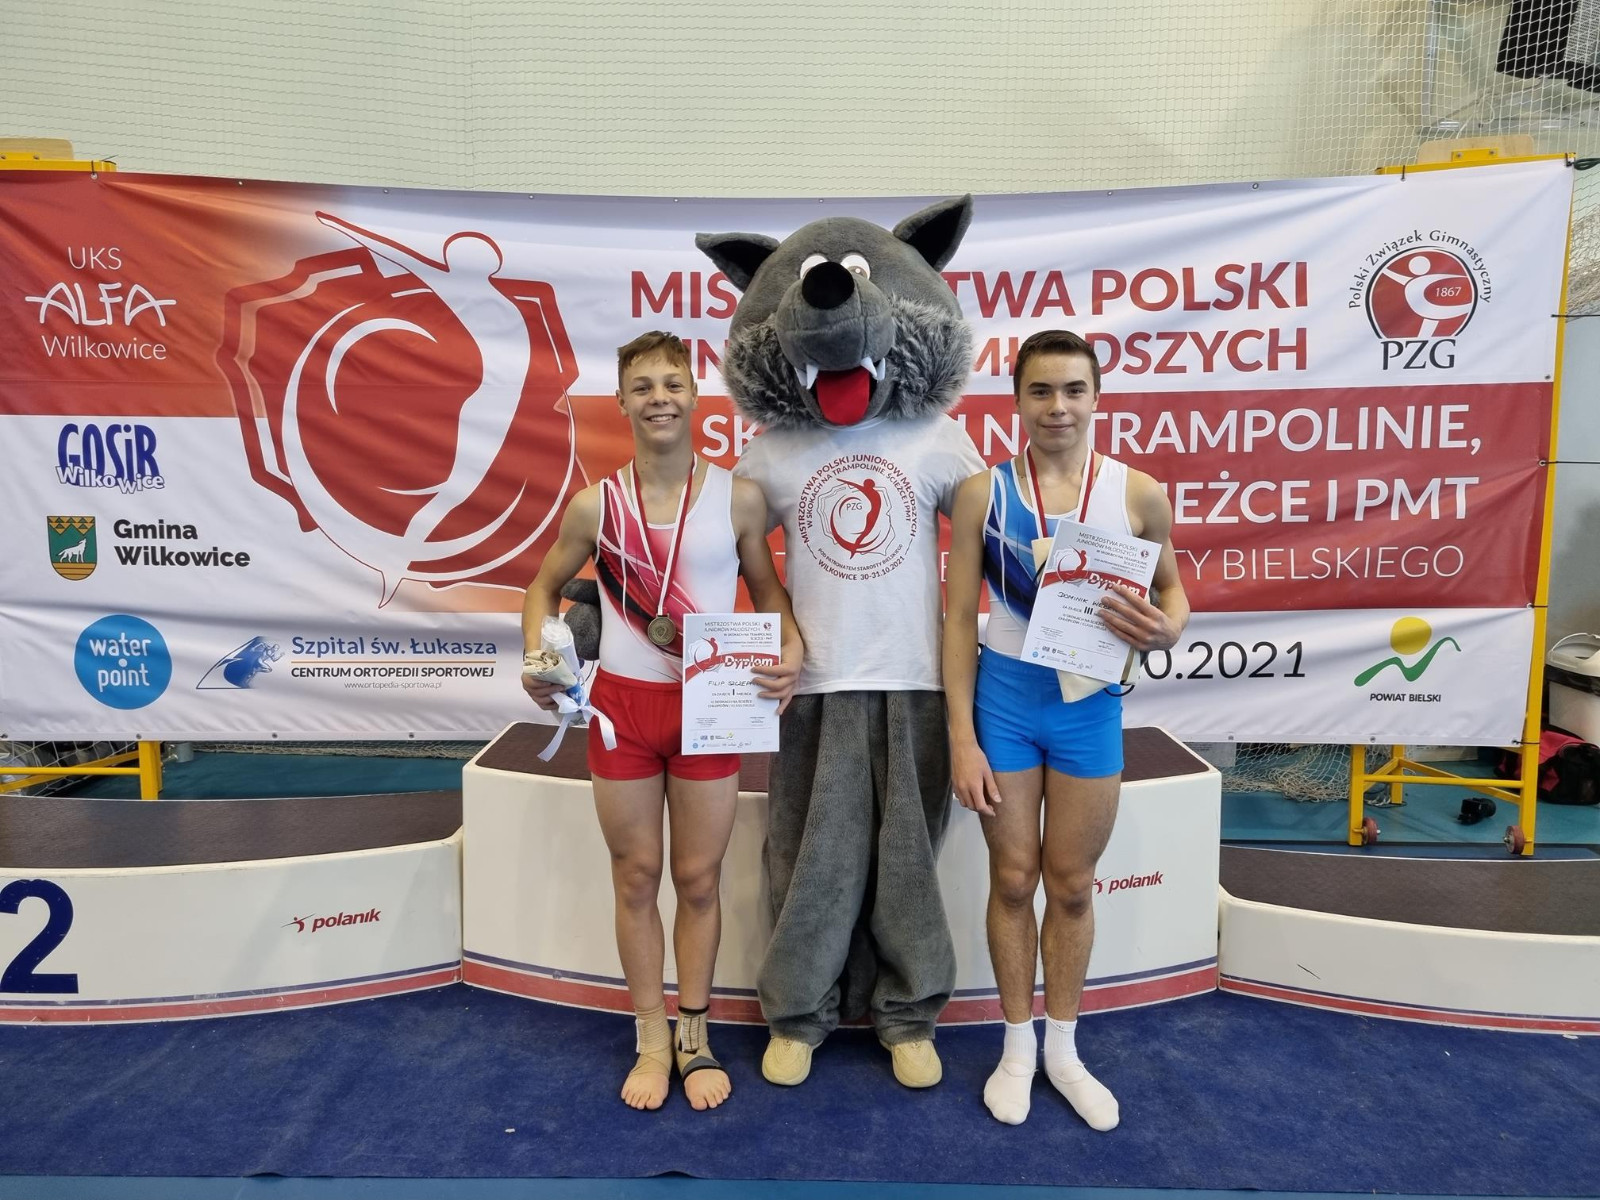 MPJm. Gimnastyka-Trampolina 2021